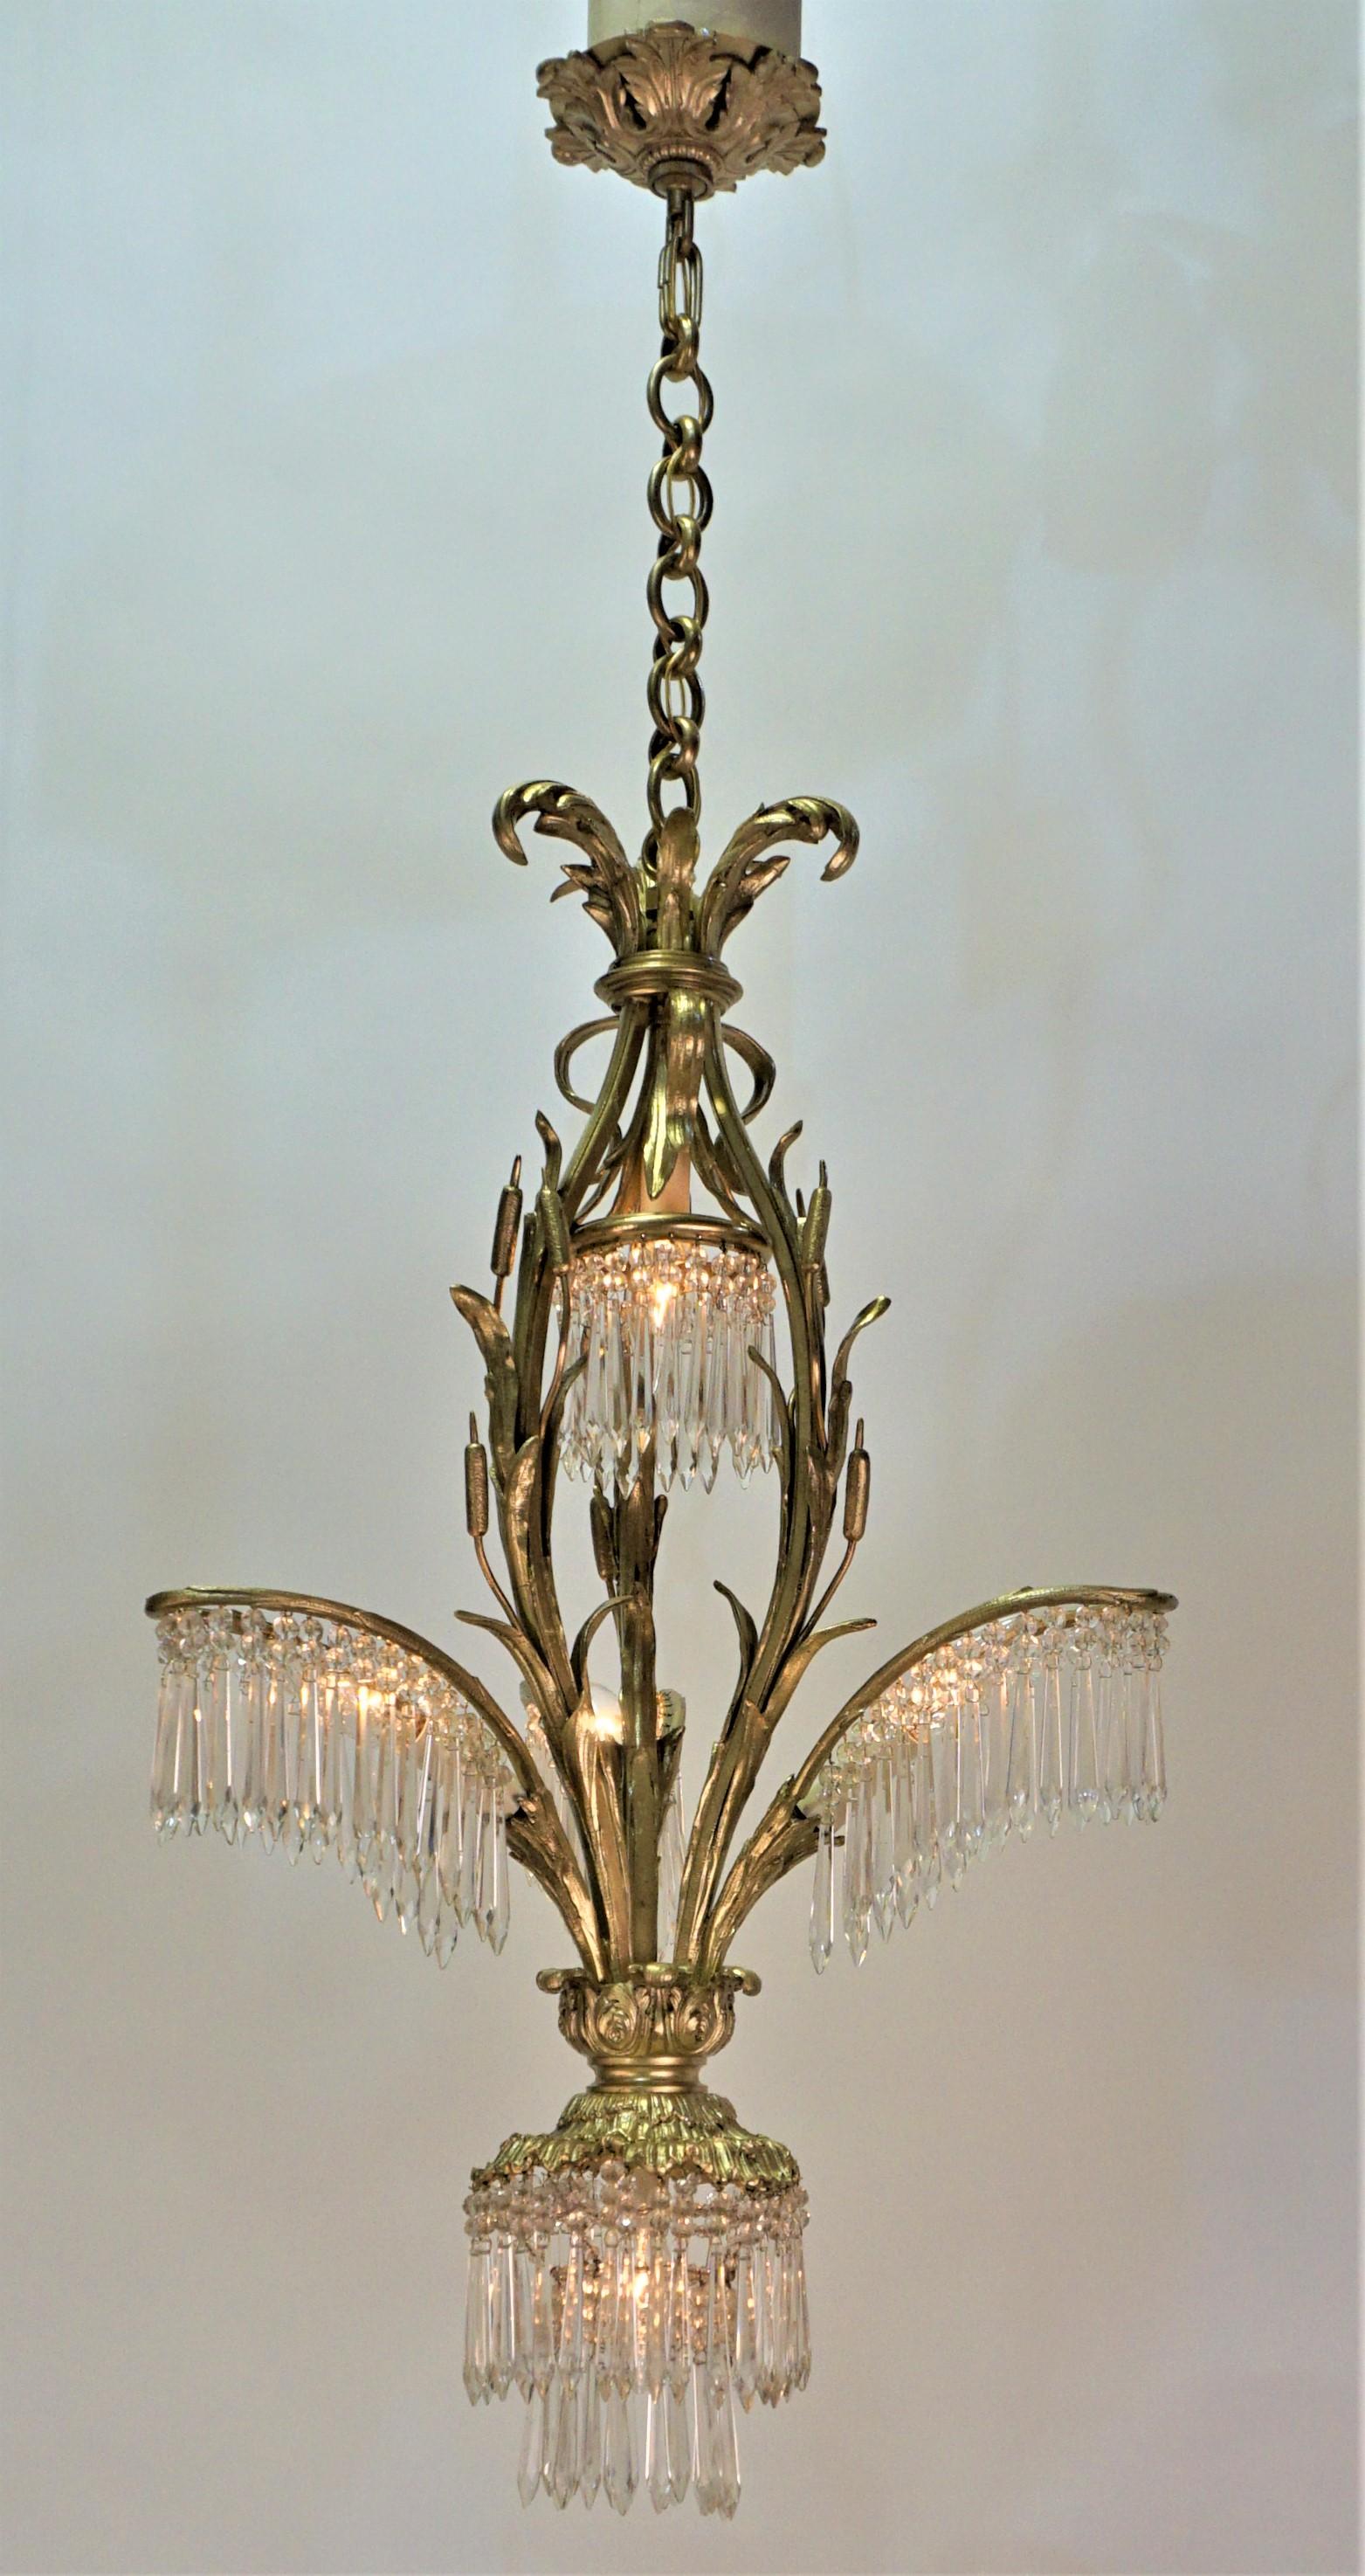 Elegant design palm tree five light bronze and crystal chandelier.
17